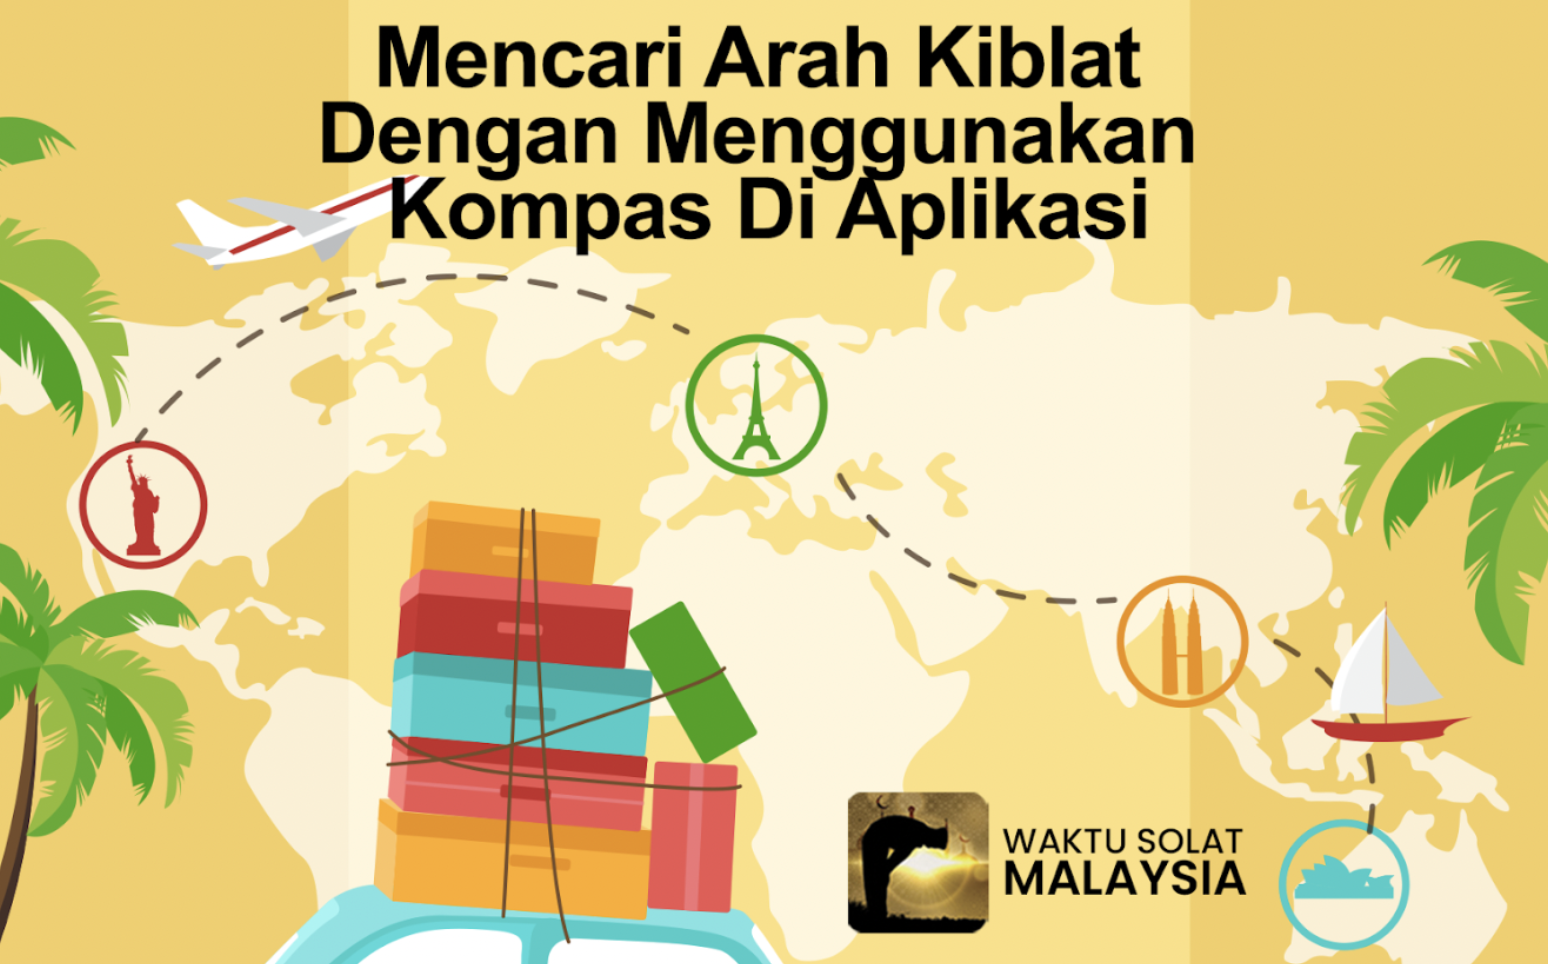 Mencari arah kiblat lebih mudah dengan aplikasi Waktu Solat Malaysia.